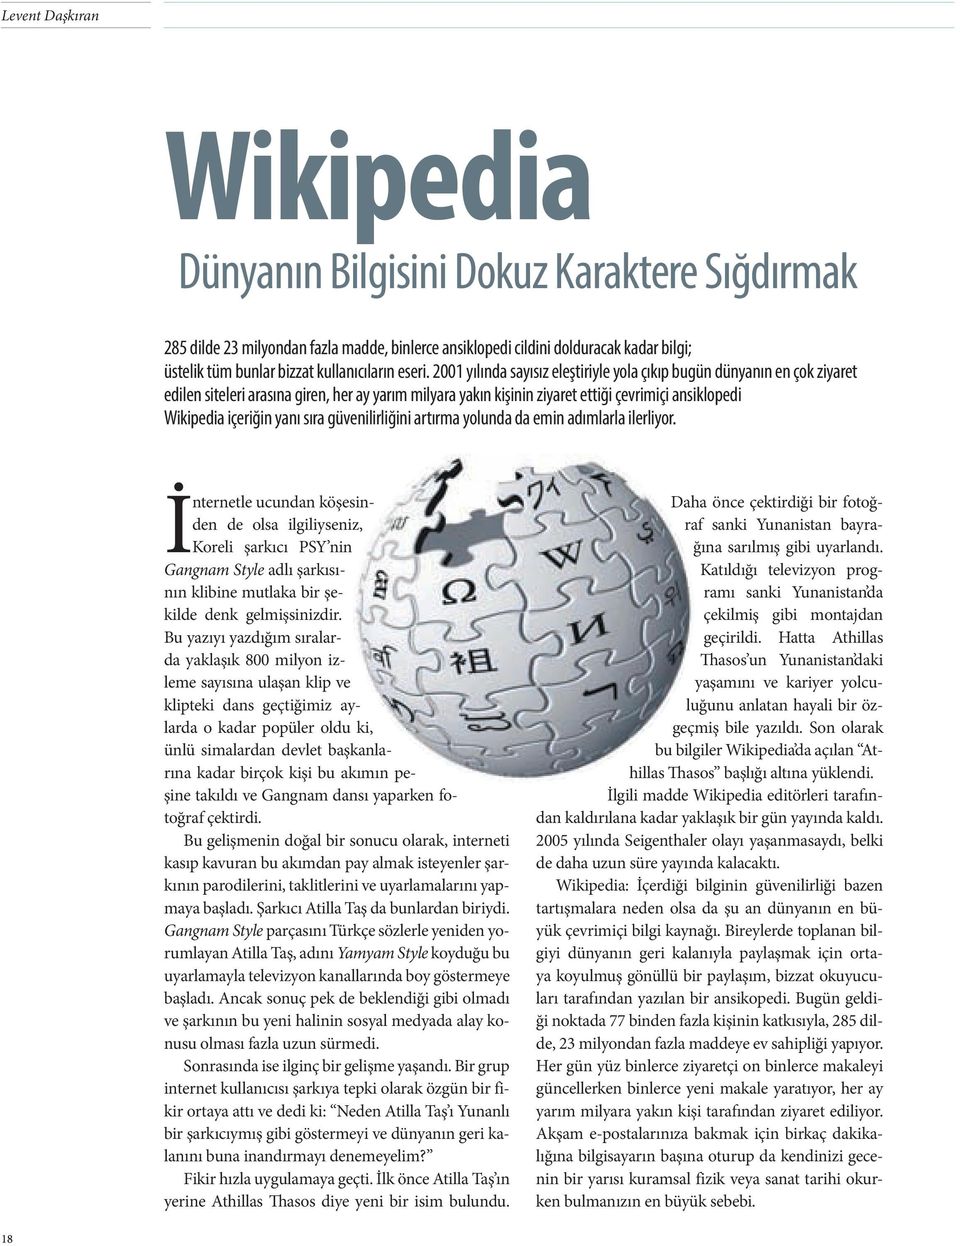 2001 yılında sayısız eleştiriyle yola çıkıp bugün dünyanın en çok ziyaret edilen siteleri arasına giren, her ay yarım milyara yakın kişinin ziyaret ettiği çevrimiçi ansiklopedi Wikipedia içeriğin